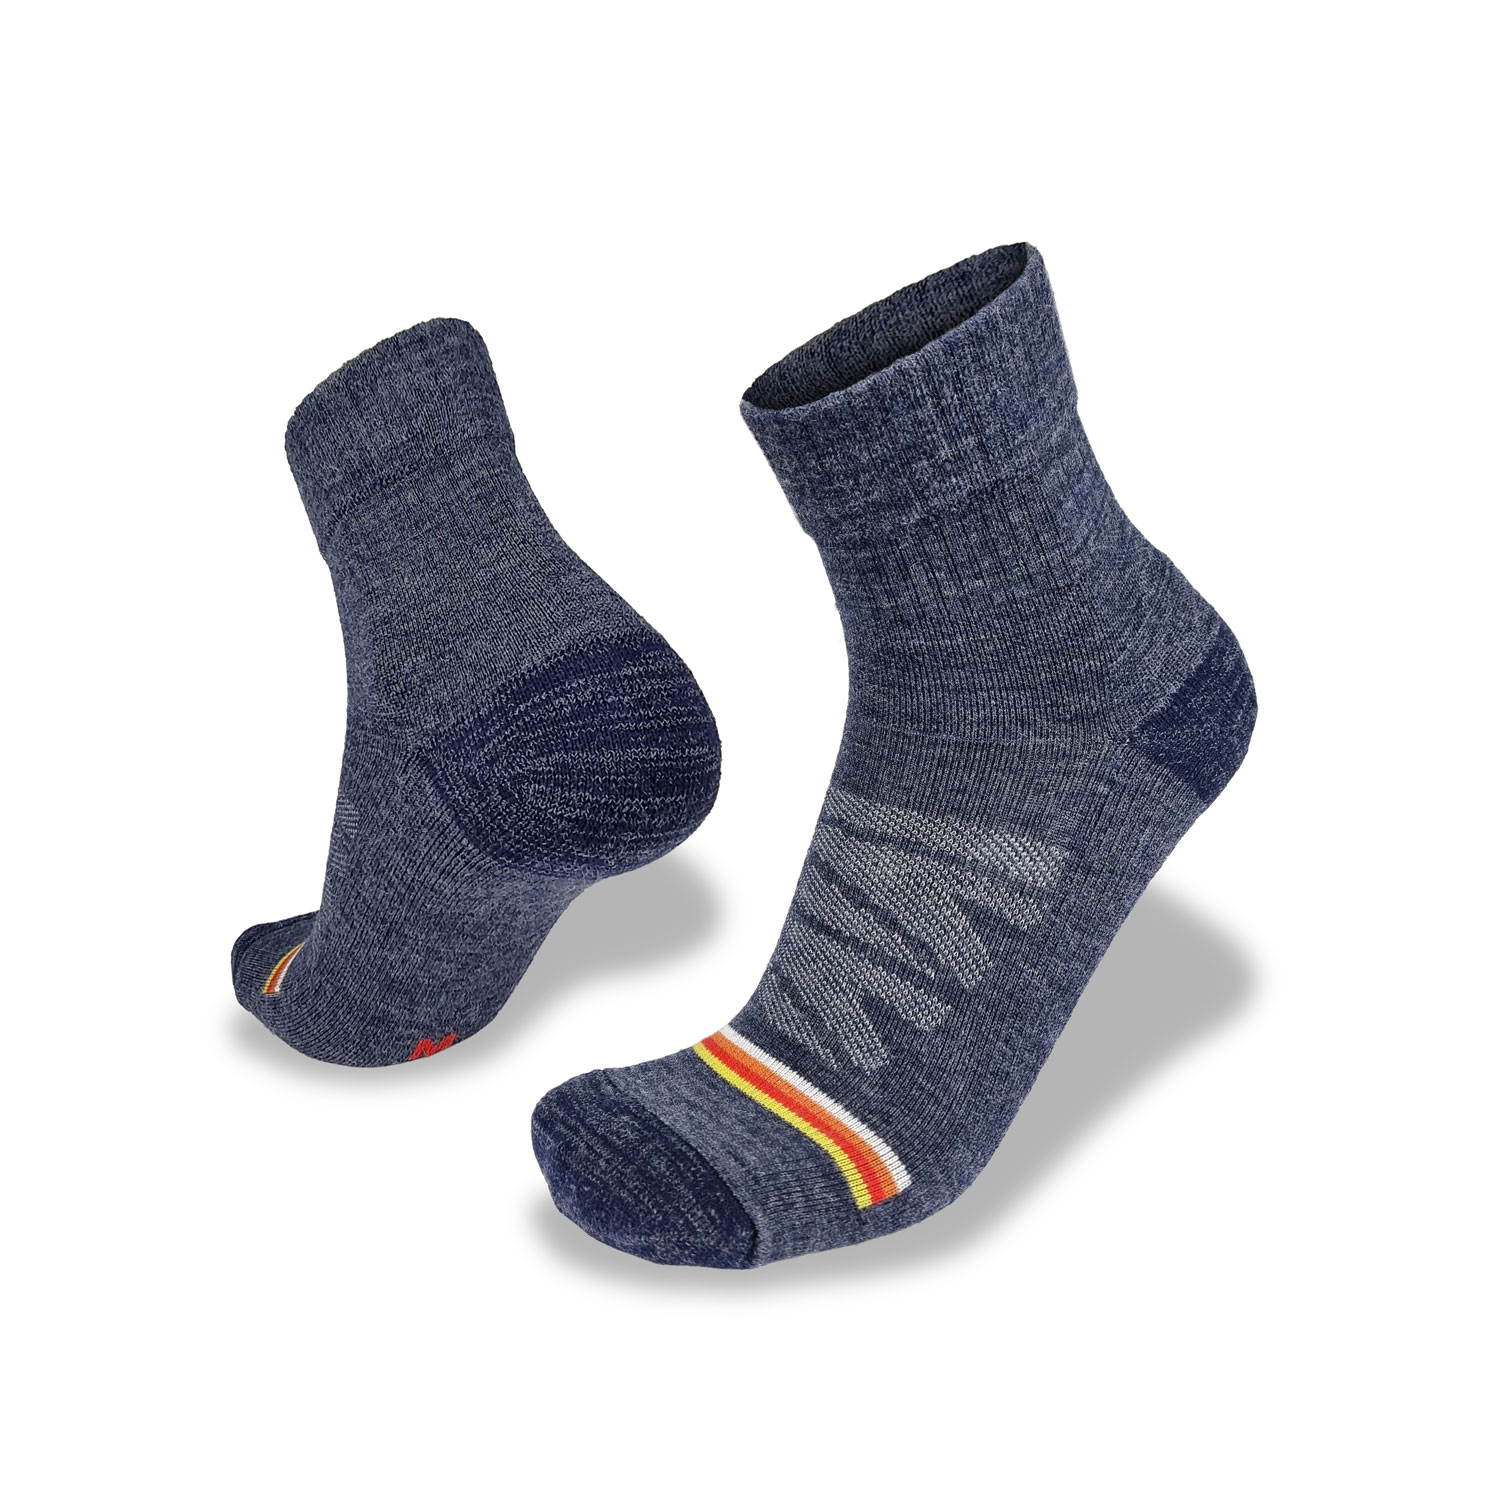 Men's Merino Multi Sport 4.0 eXtreme socks by Wilderness Wear.